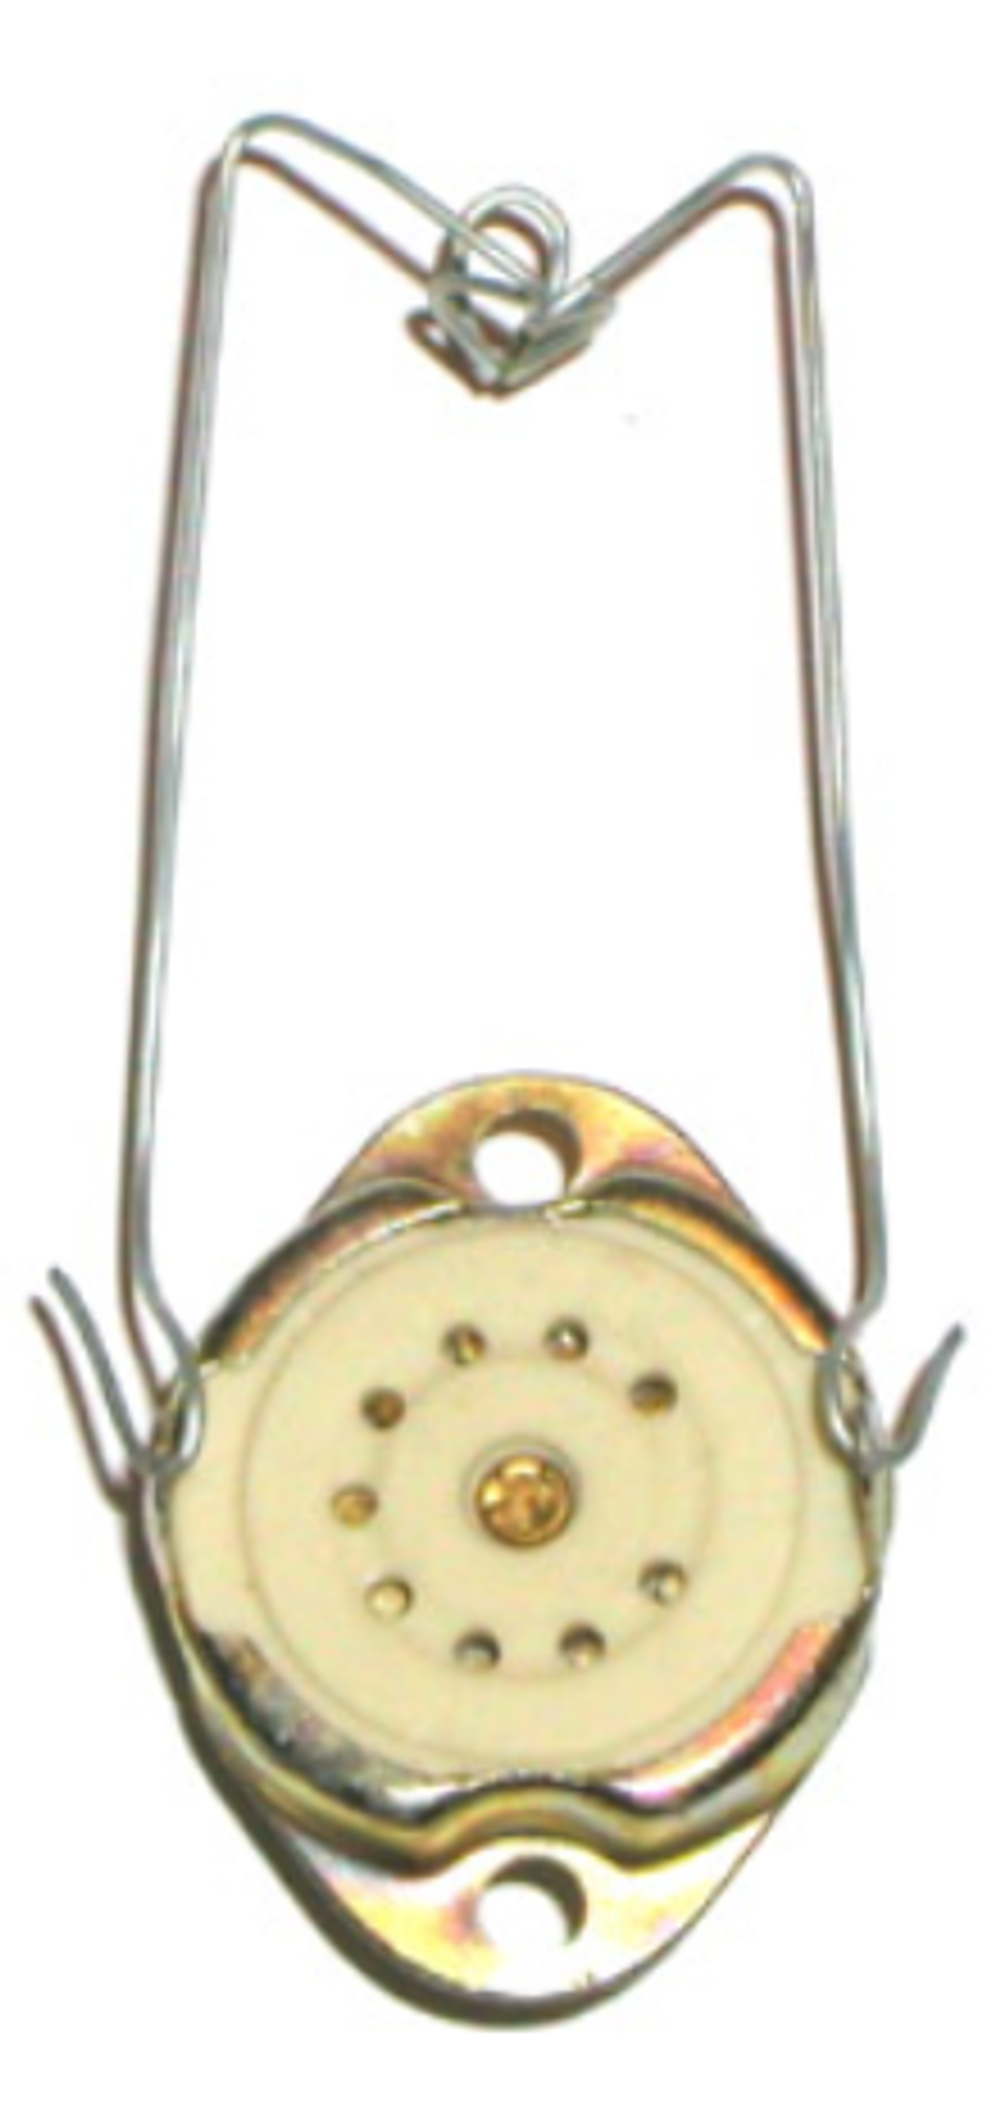 Панель ПЛК-9-Д55 керамика 9 pin с креплением